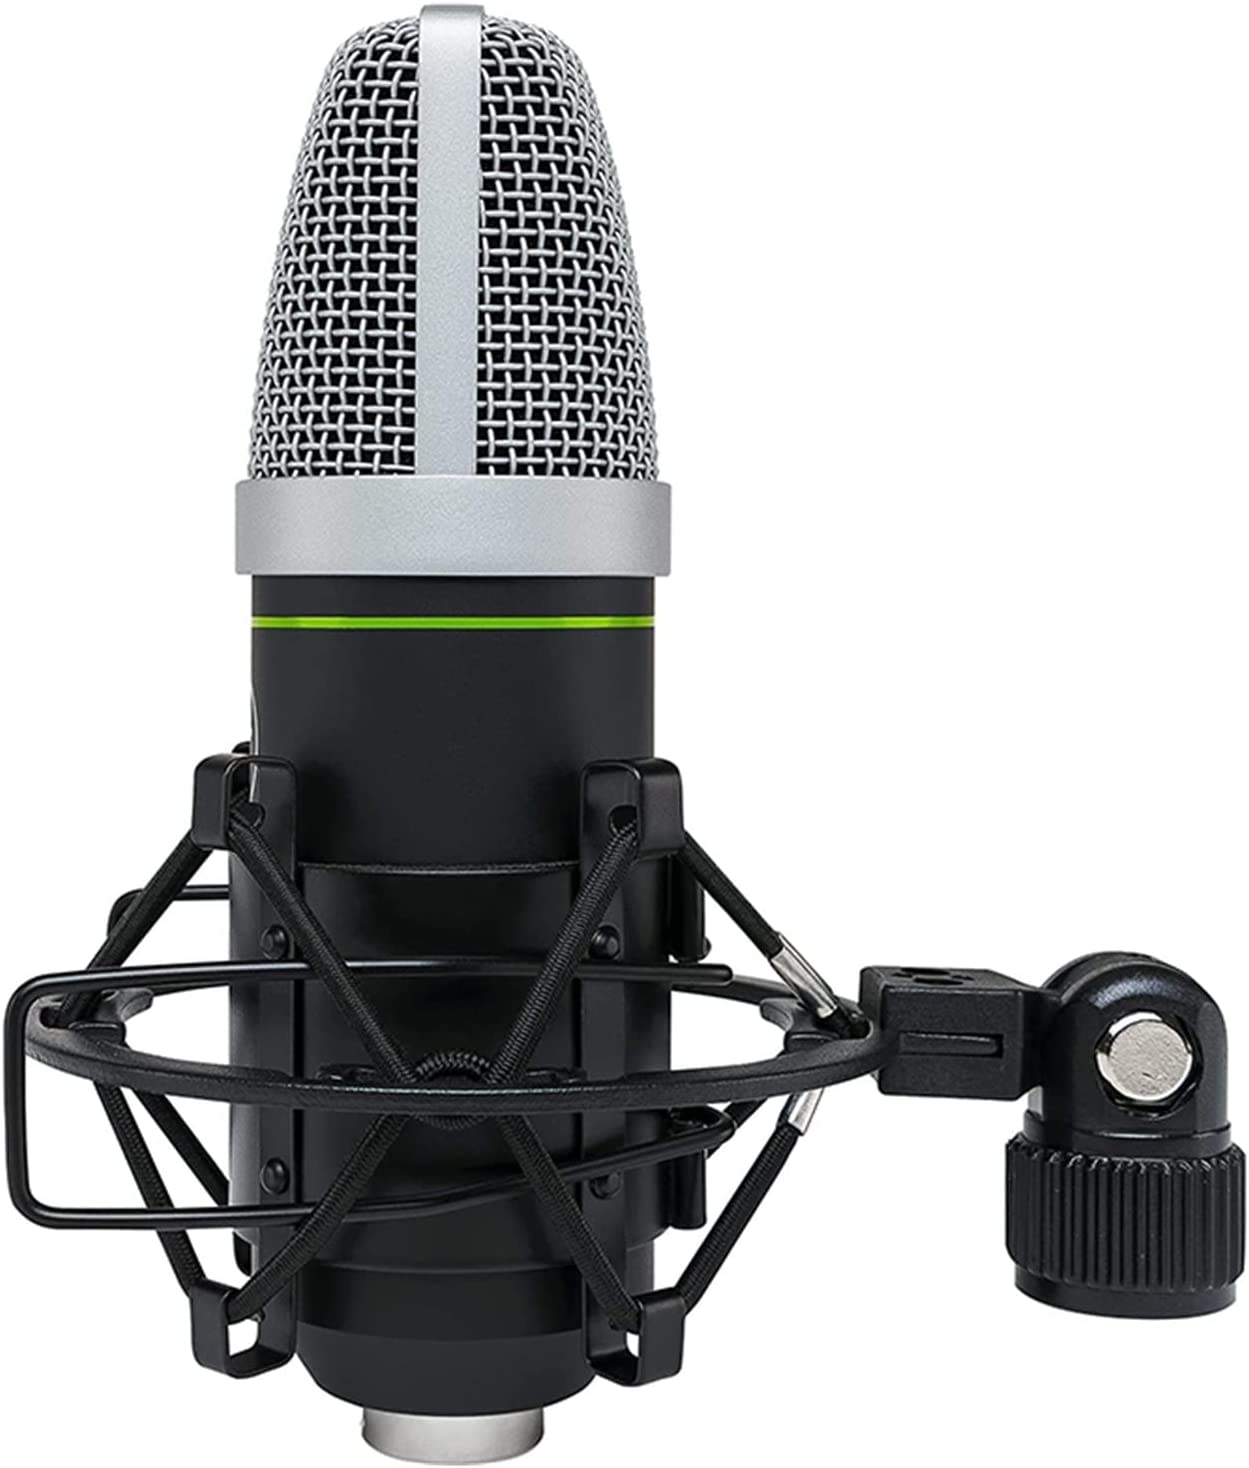 Mackie EM-91CU Large Diaphragm USB Condenser Microphone